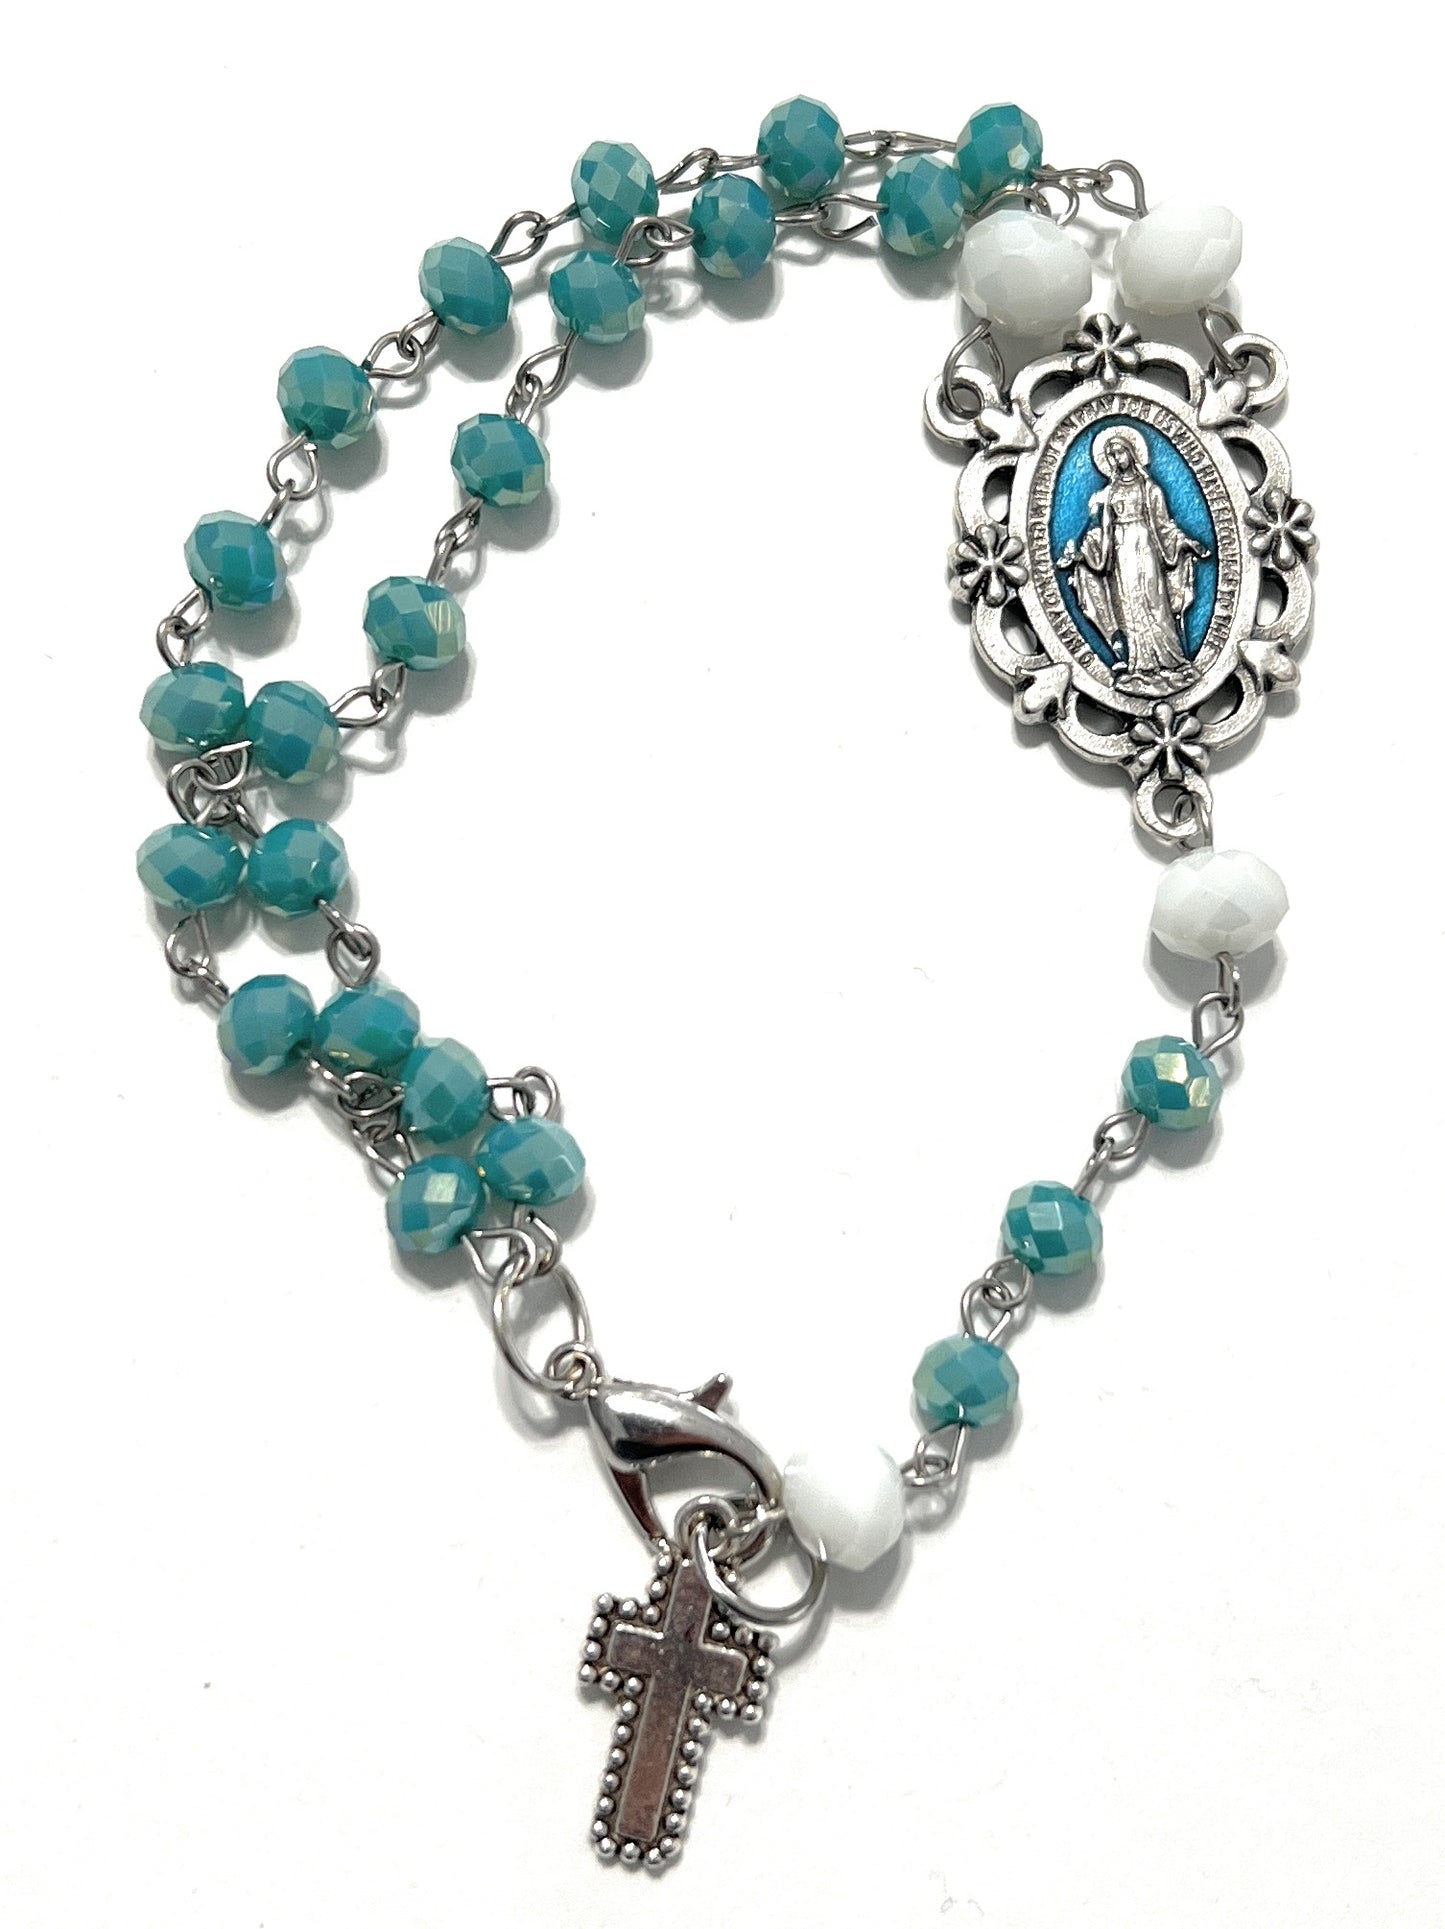 Custom Hand Beaded Religious Rosary